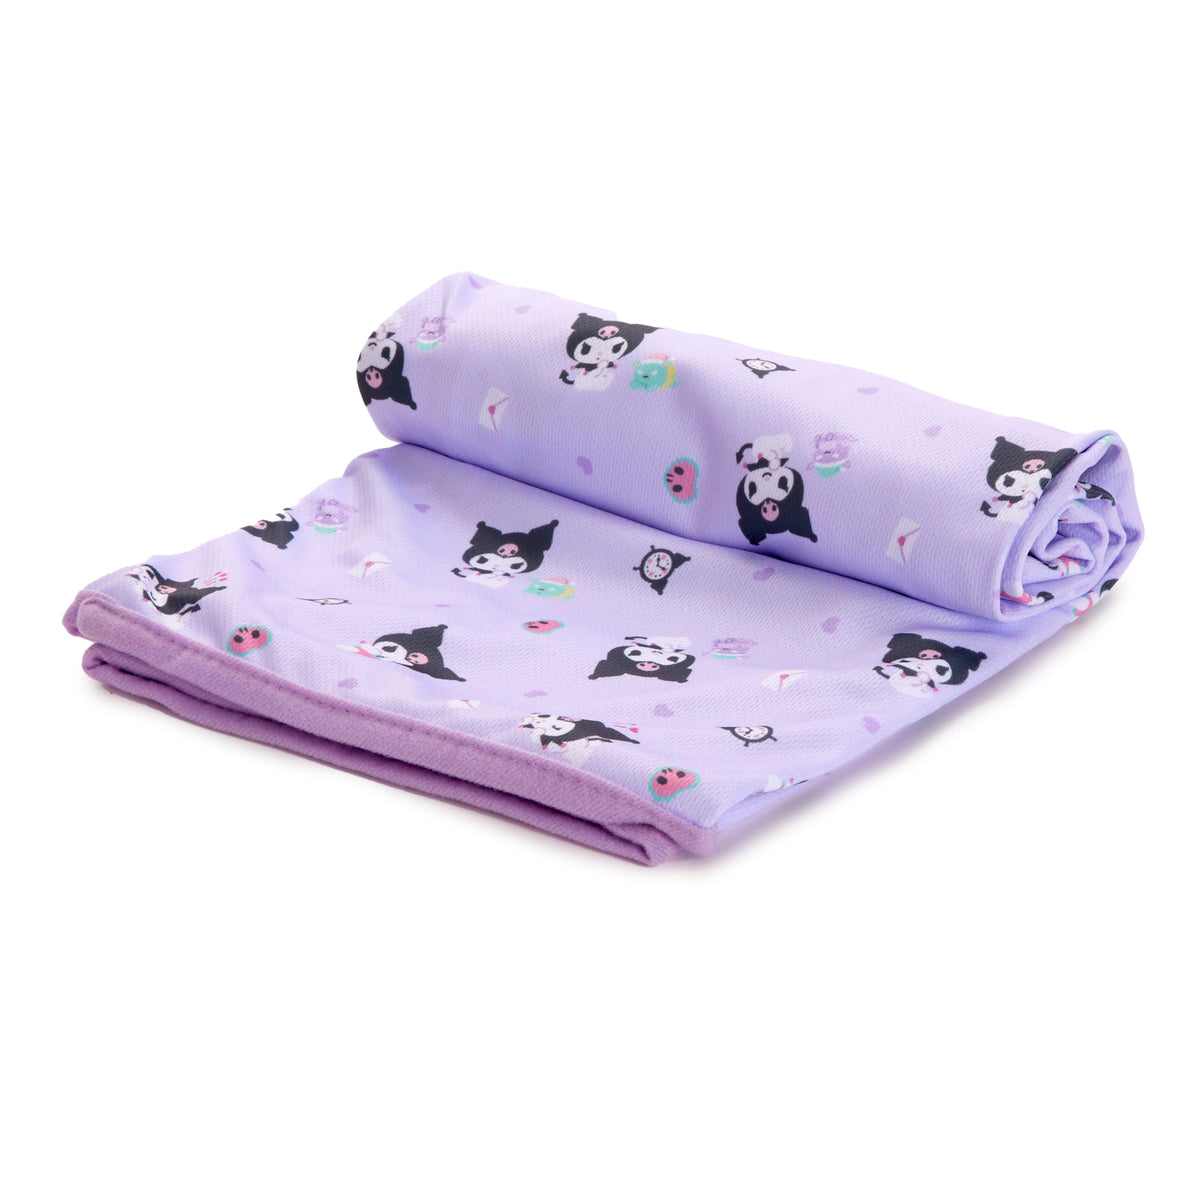 Kuromi Lap Blanket Home Goods Japan Original   